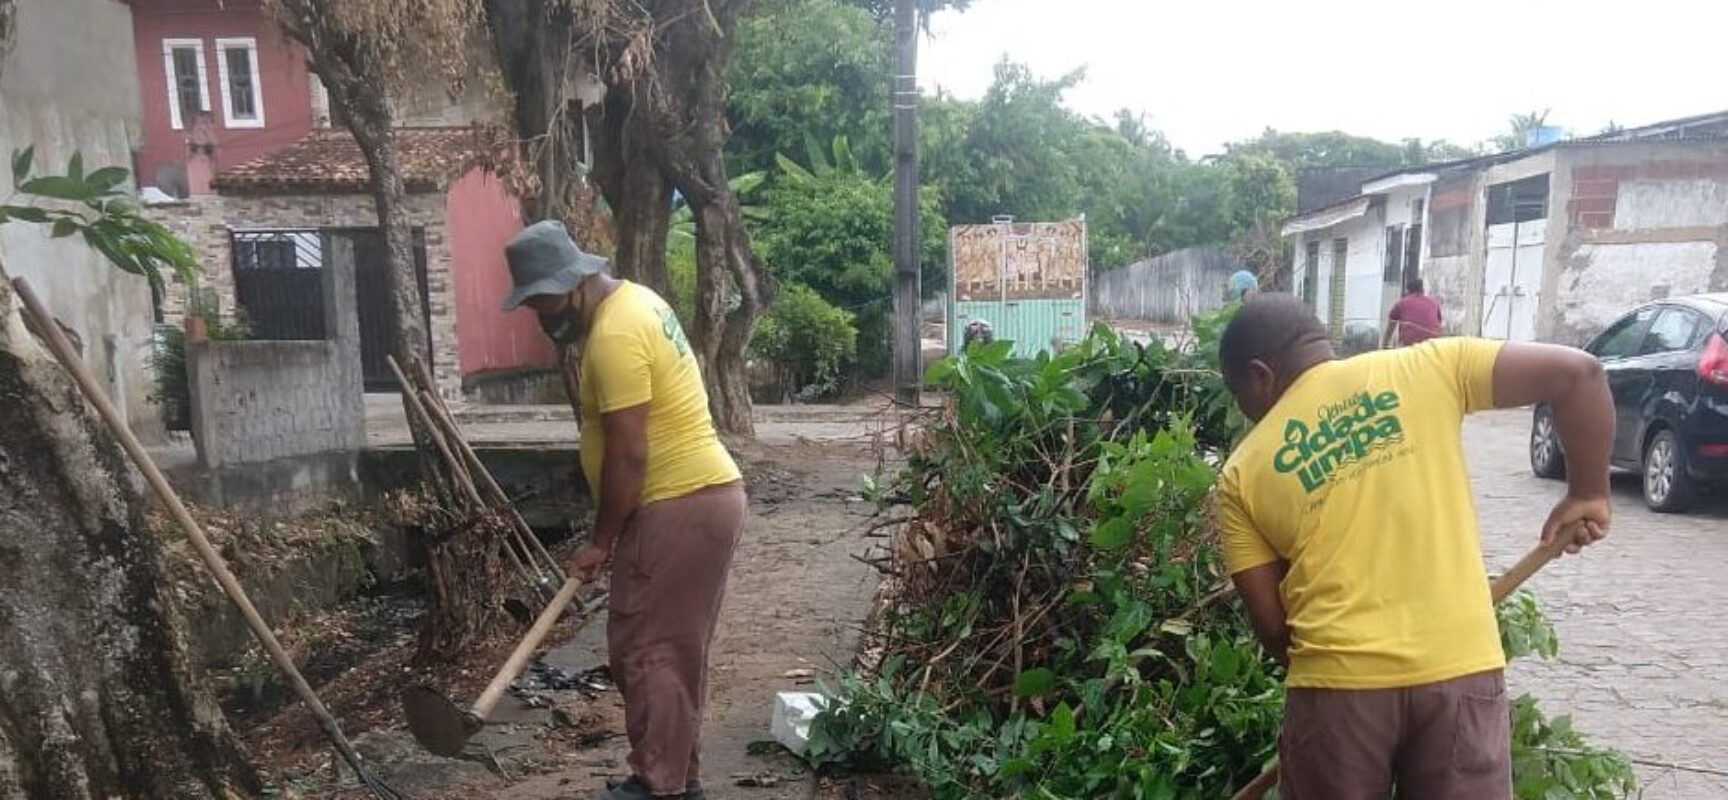 Prefeitura inicia mutirão de limpeza nos bairros de Ilhéus